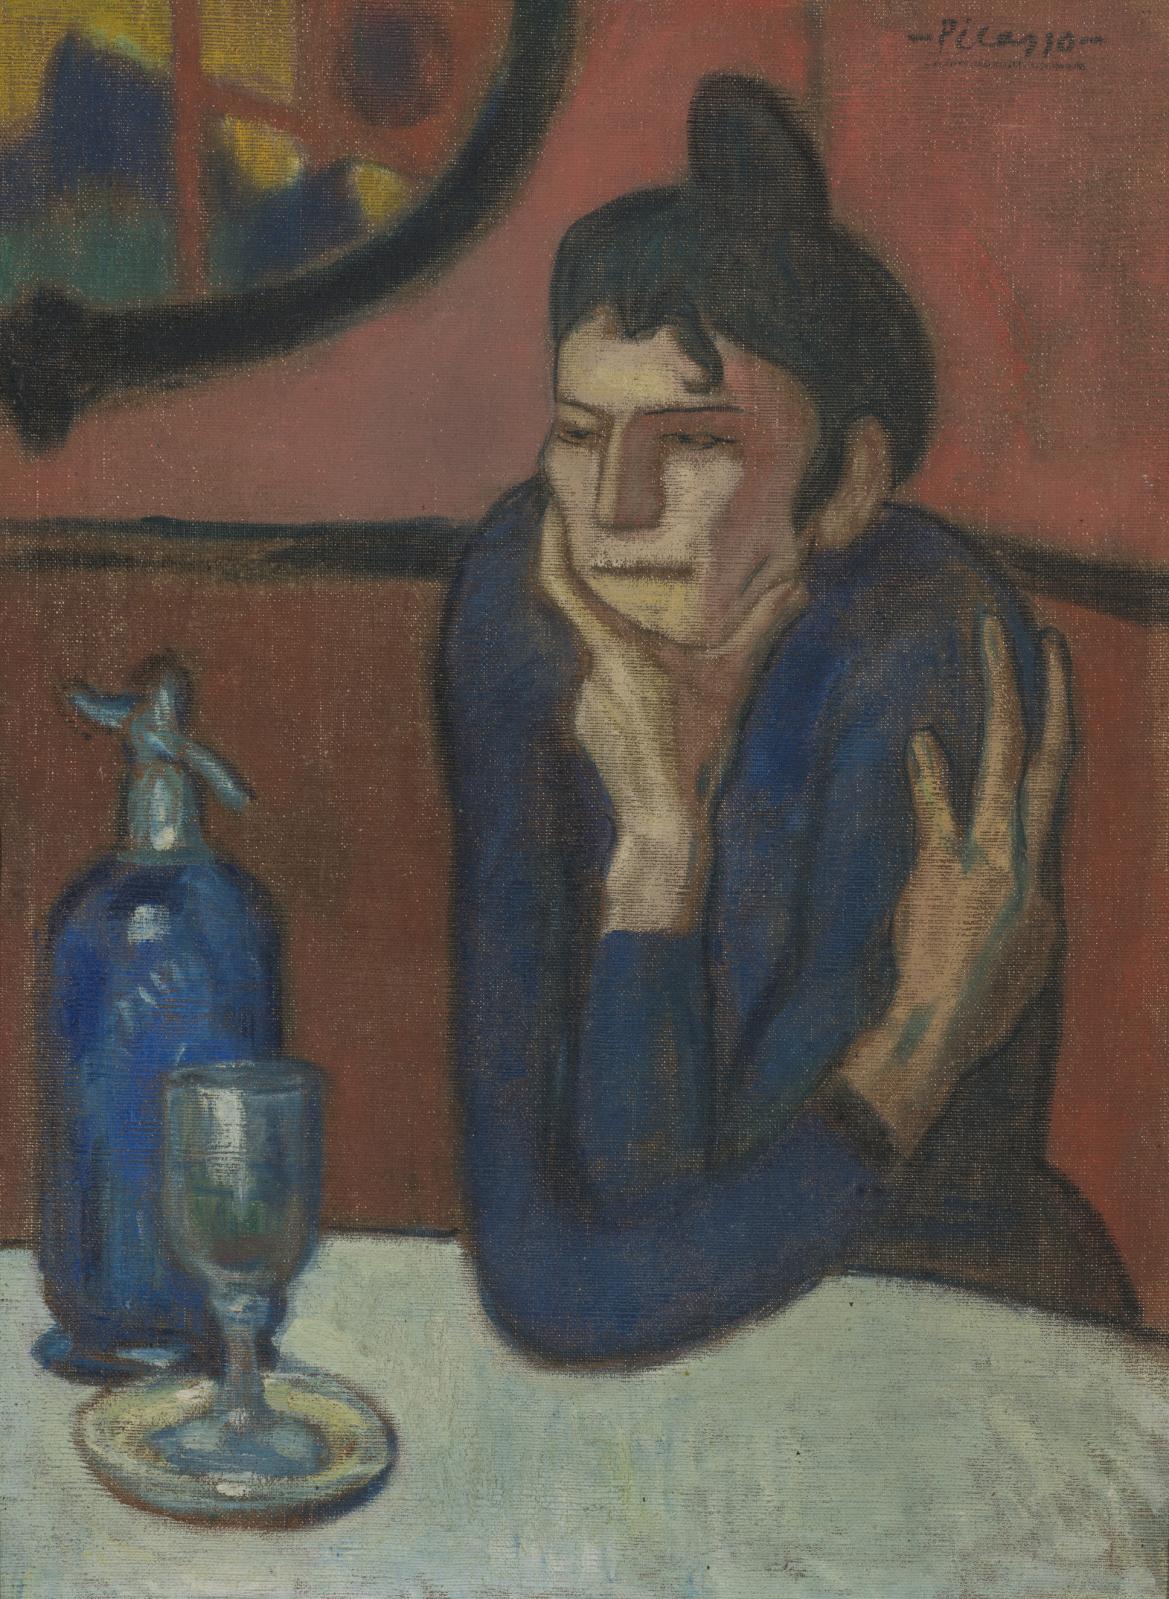 Pablo Picasso (1881-1973), La Buveuse d’absinthe, 1901, huile sur toile, 73 x 54 cm, musée d’État de l’Ermitage, Saint-Pétersbourg. Il est